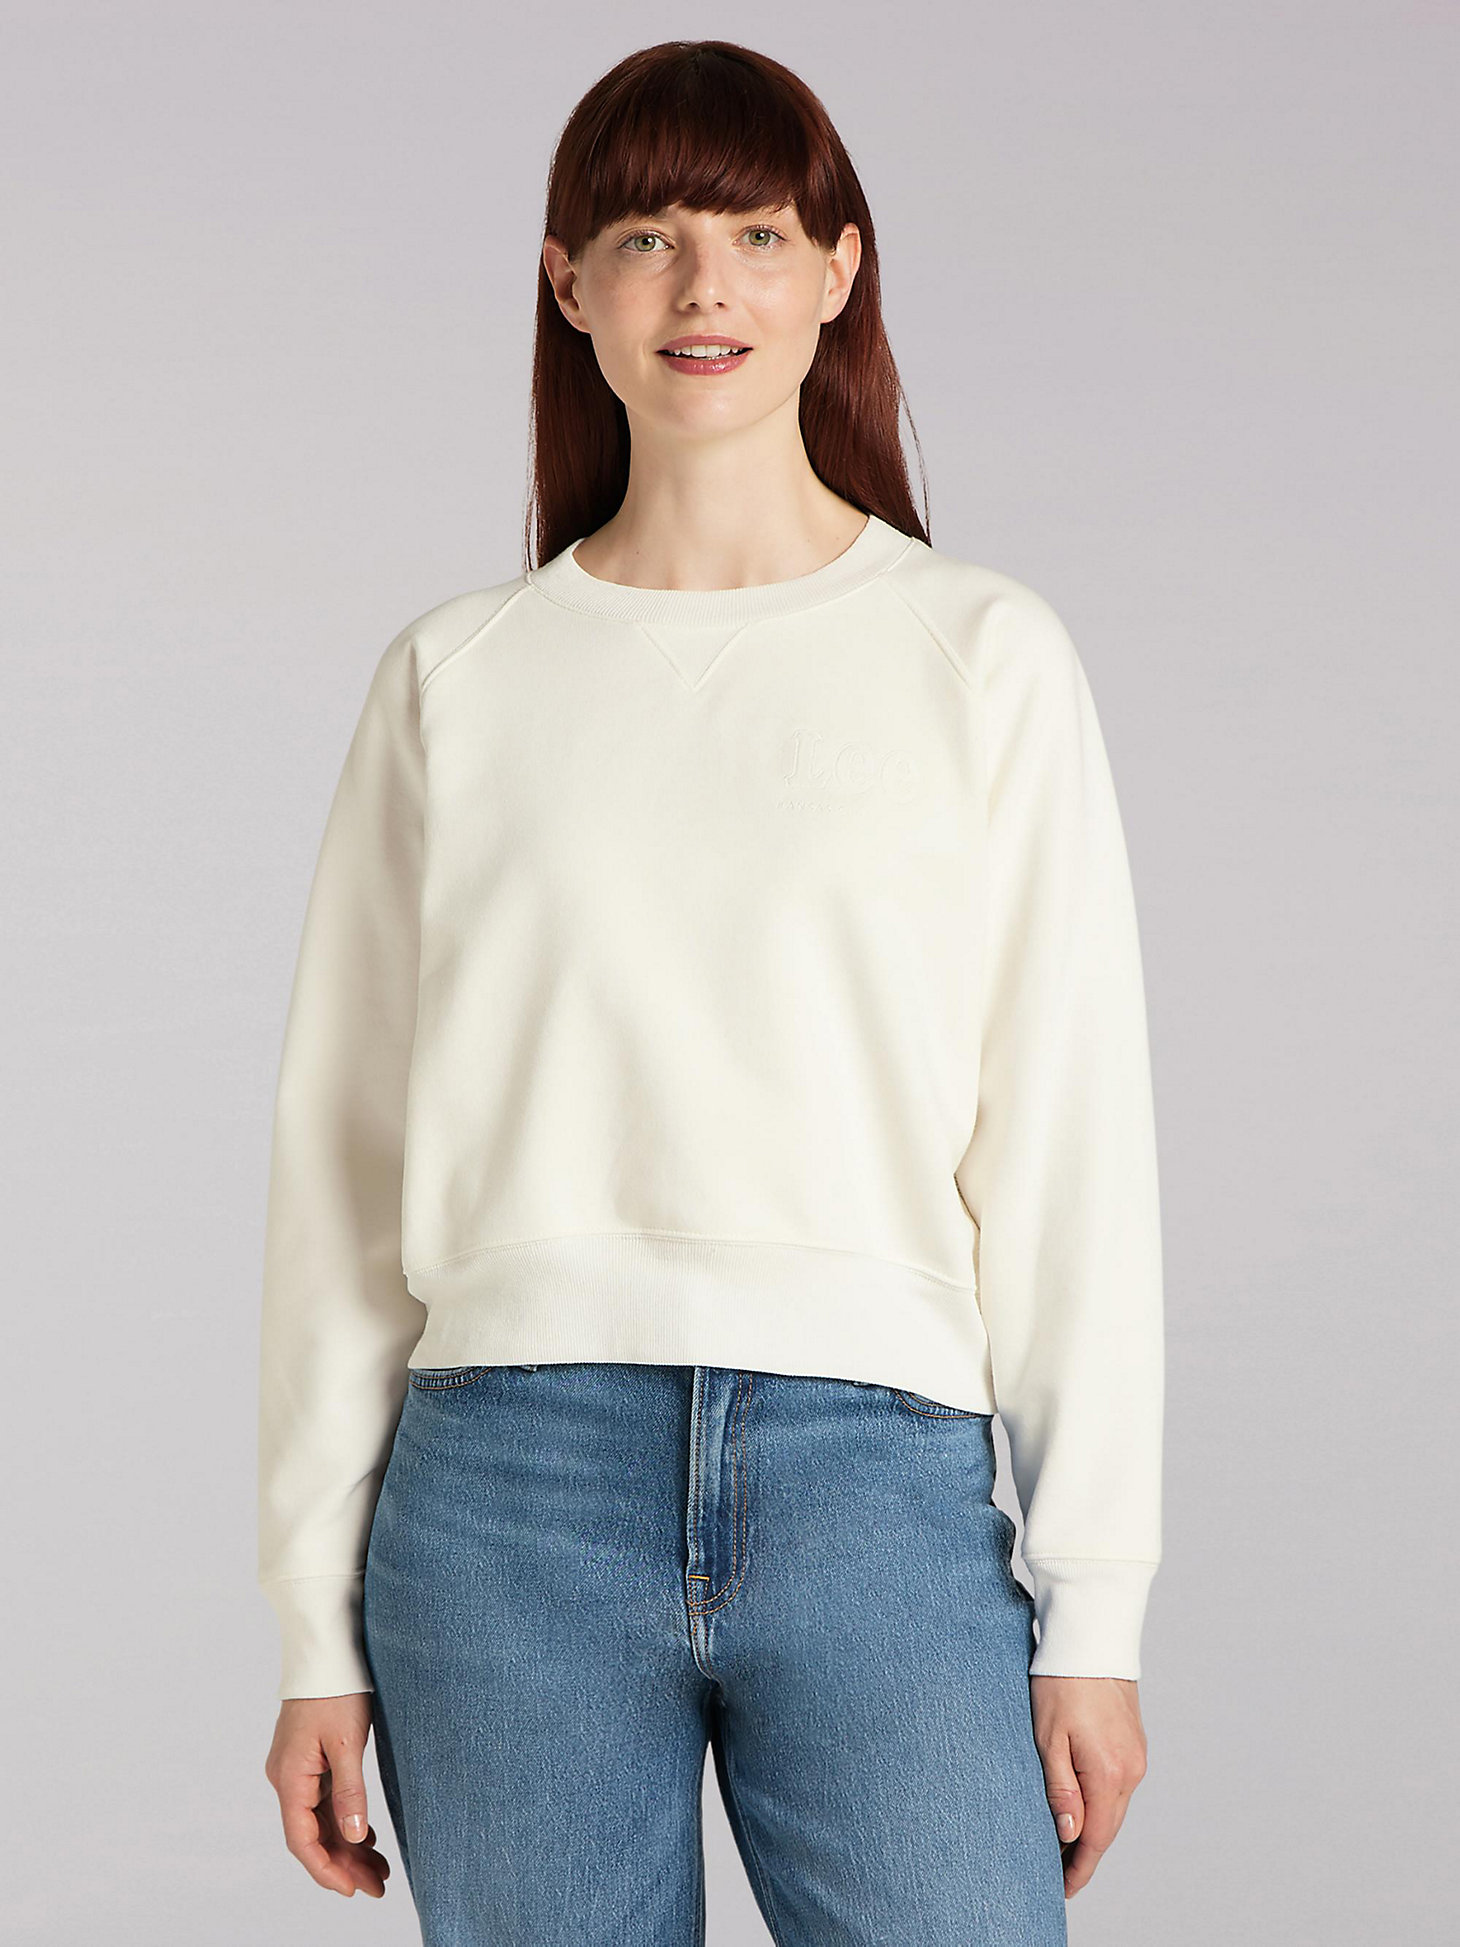 Women's Lee European Collection Crop Sweatshirt in White Canvas main view